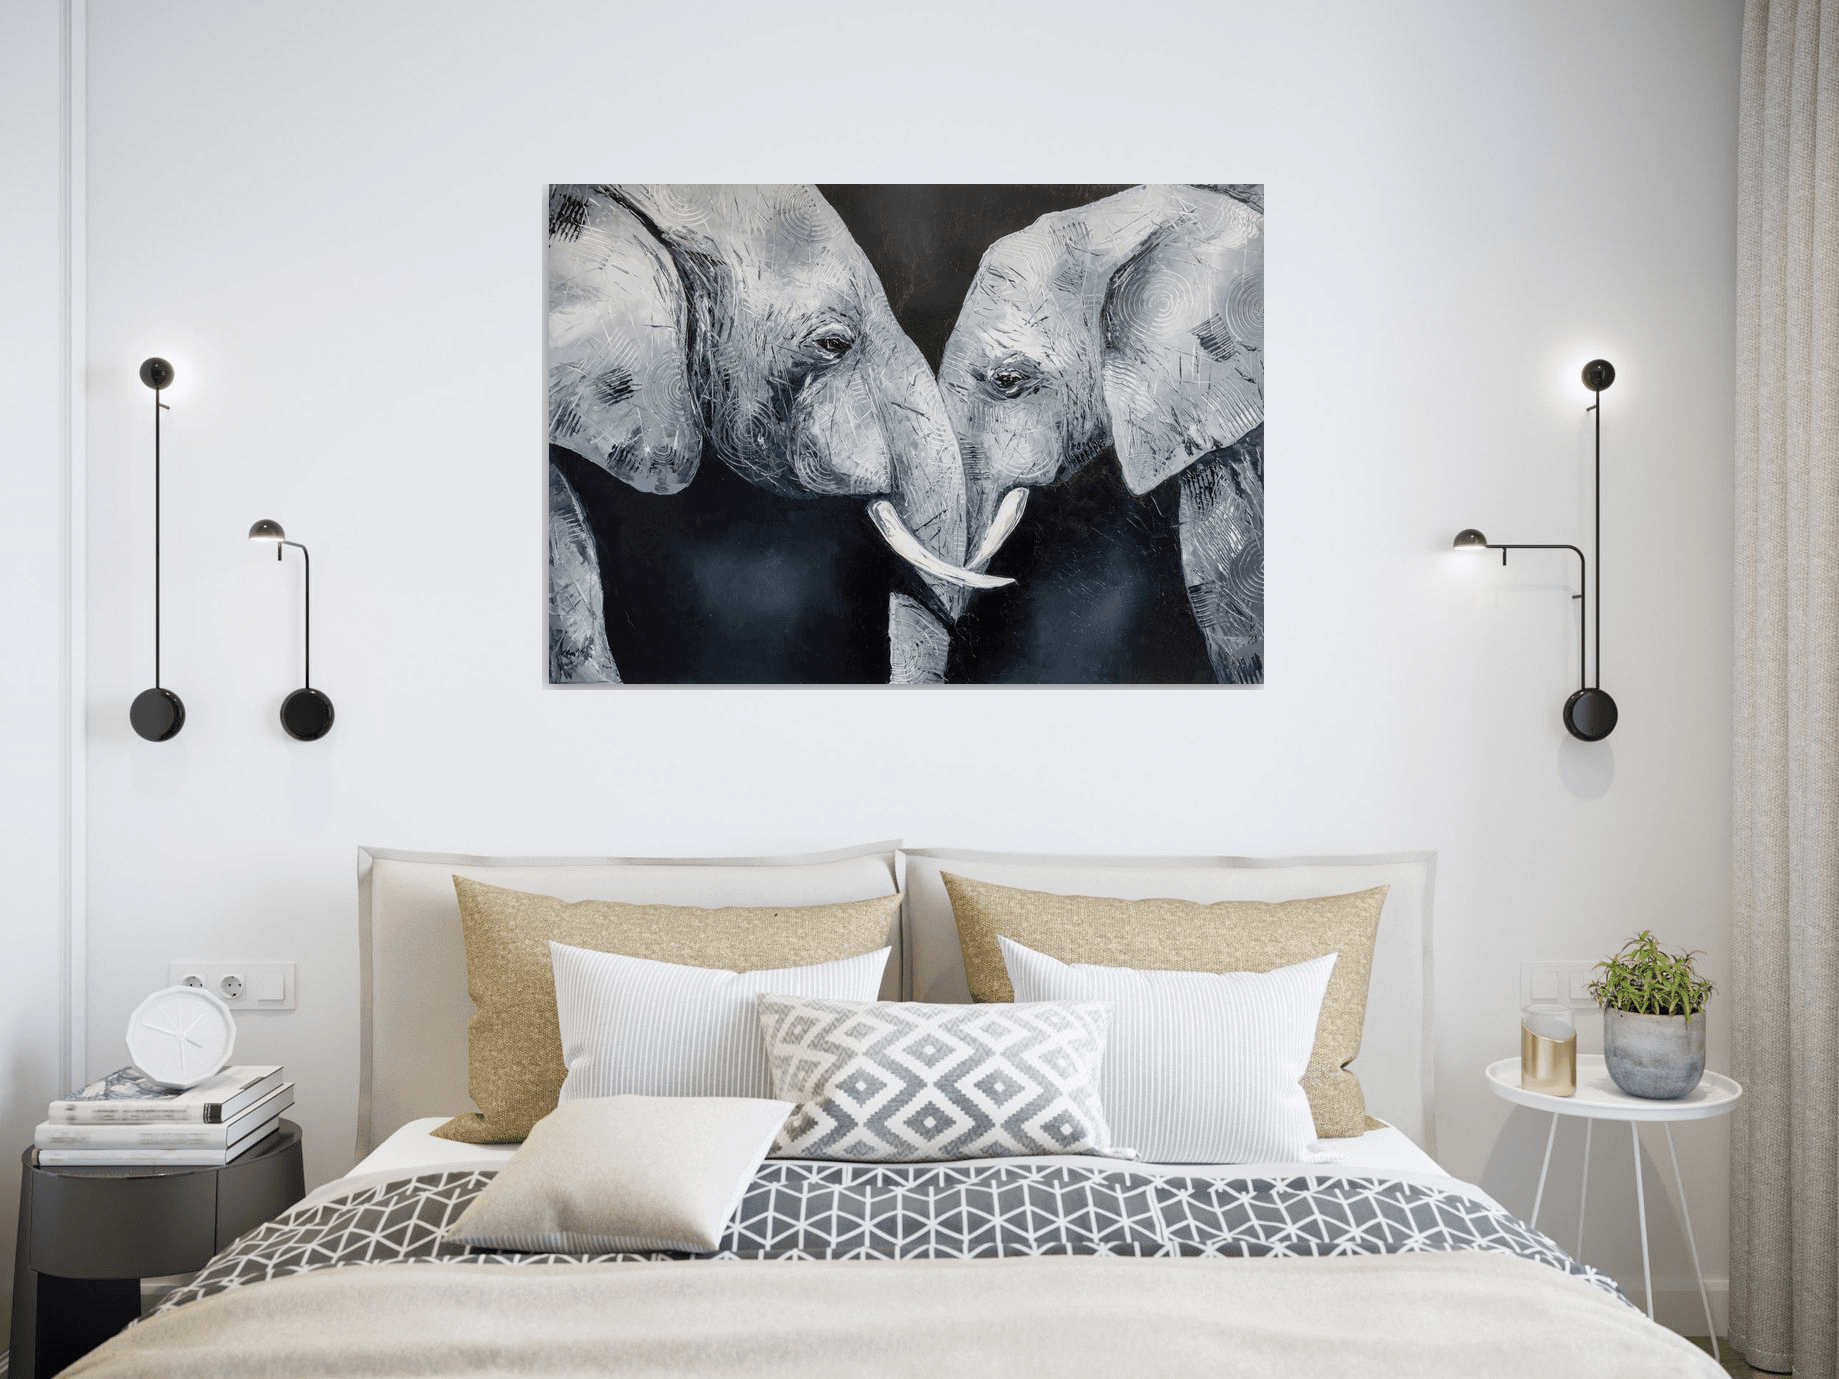 Enamored elephants